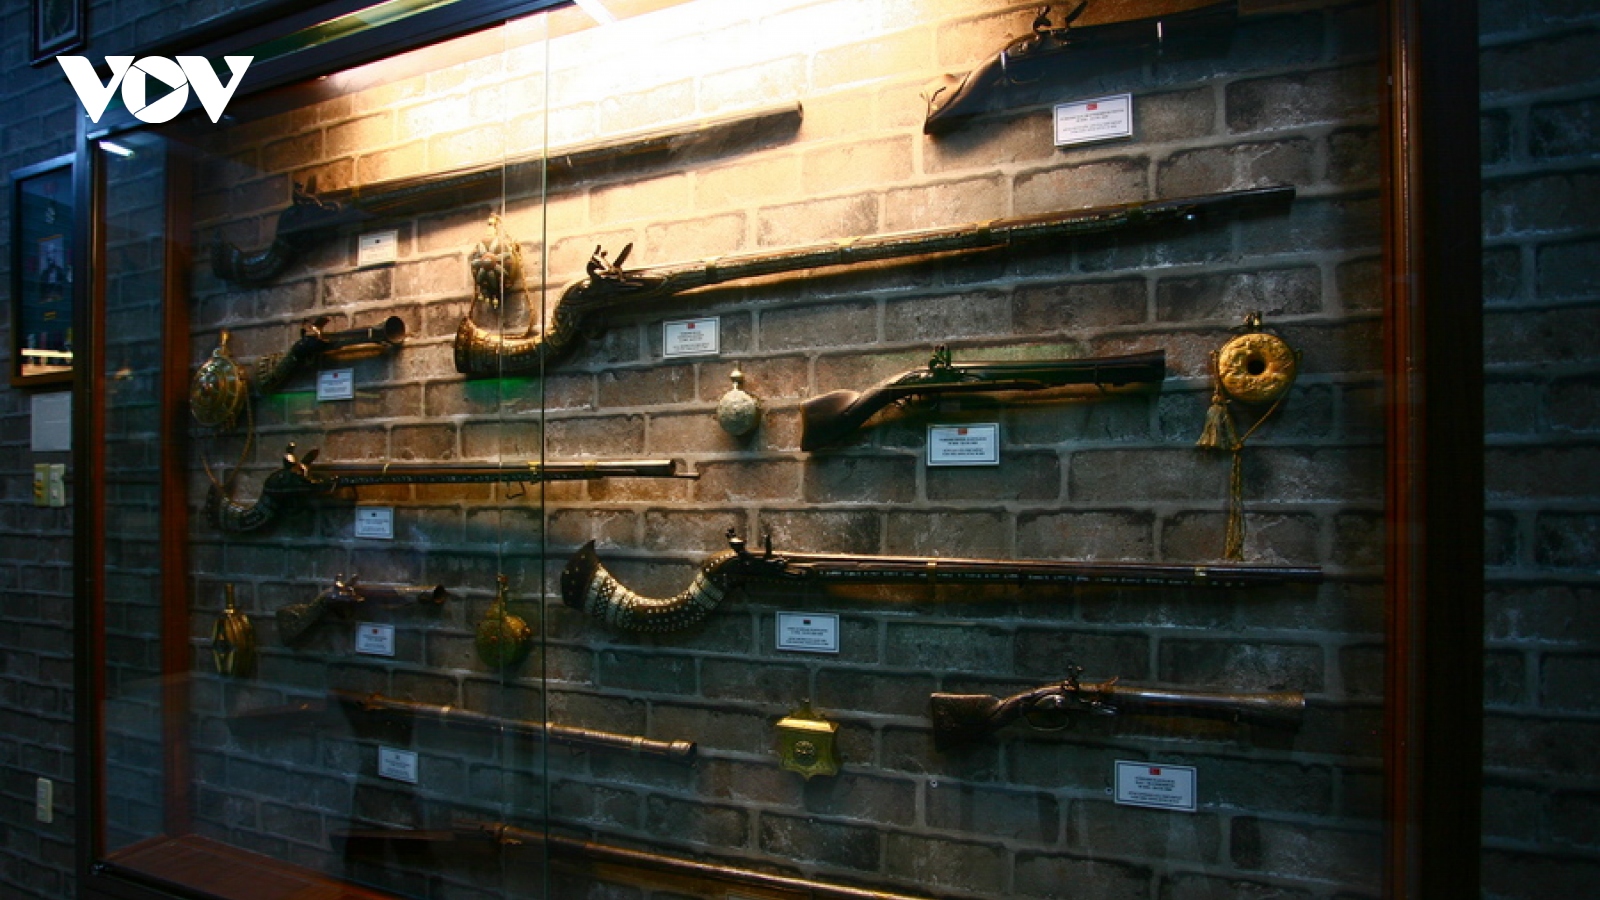 Độc đáo Bảo tàng vũ khí cổ ở Vũng Tàu